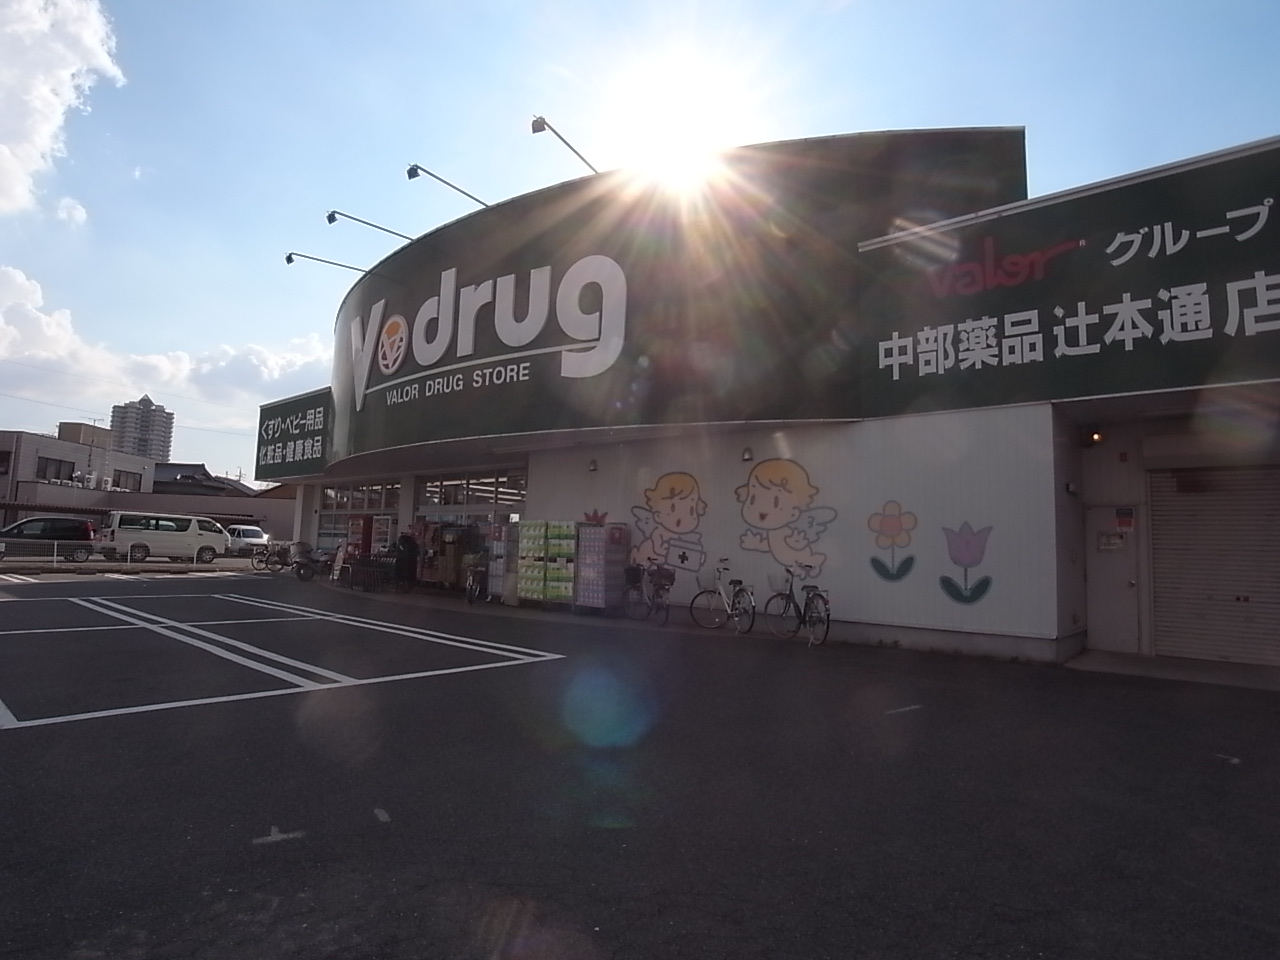 Dorakkusutoa. V ・ drug Tsujihontori shop 800m until (drugstore)